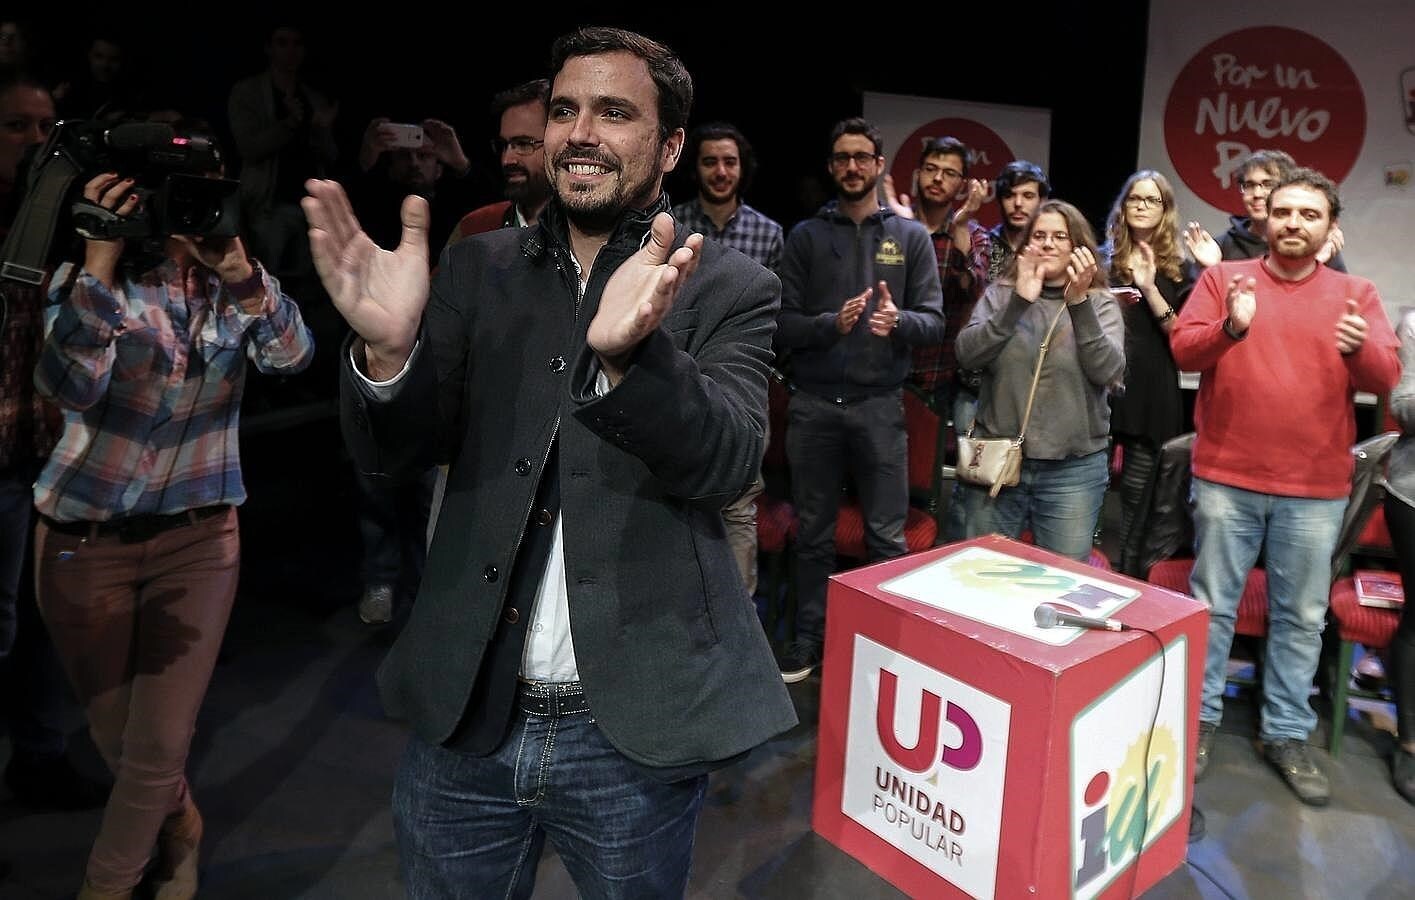 El candidato a la Presidencia por Unidad Popular, Alberto Garzón, durante su intervención hoy en un acto público en Sevilla